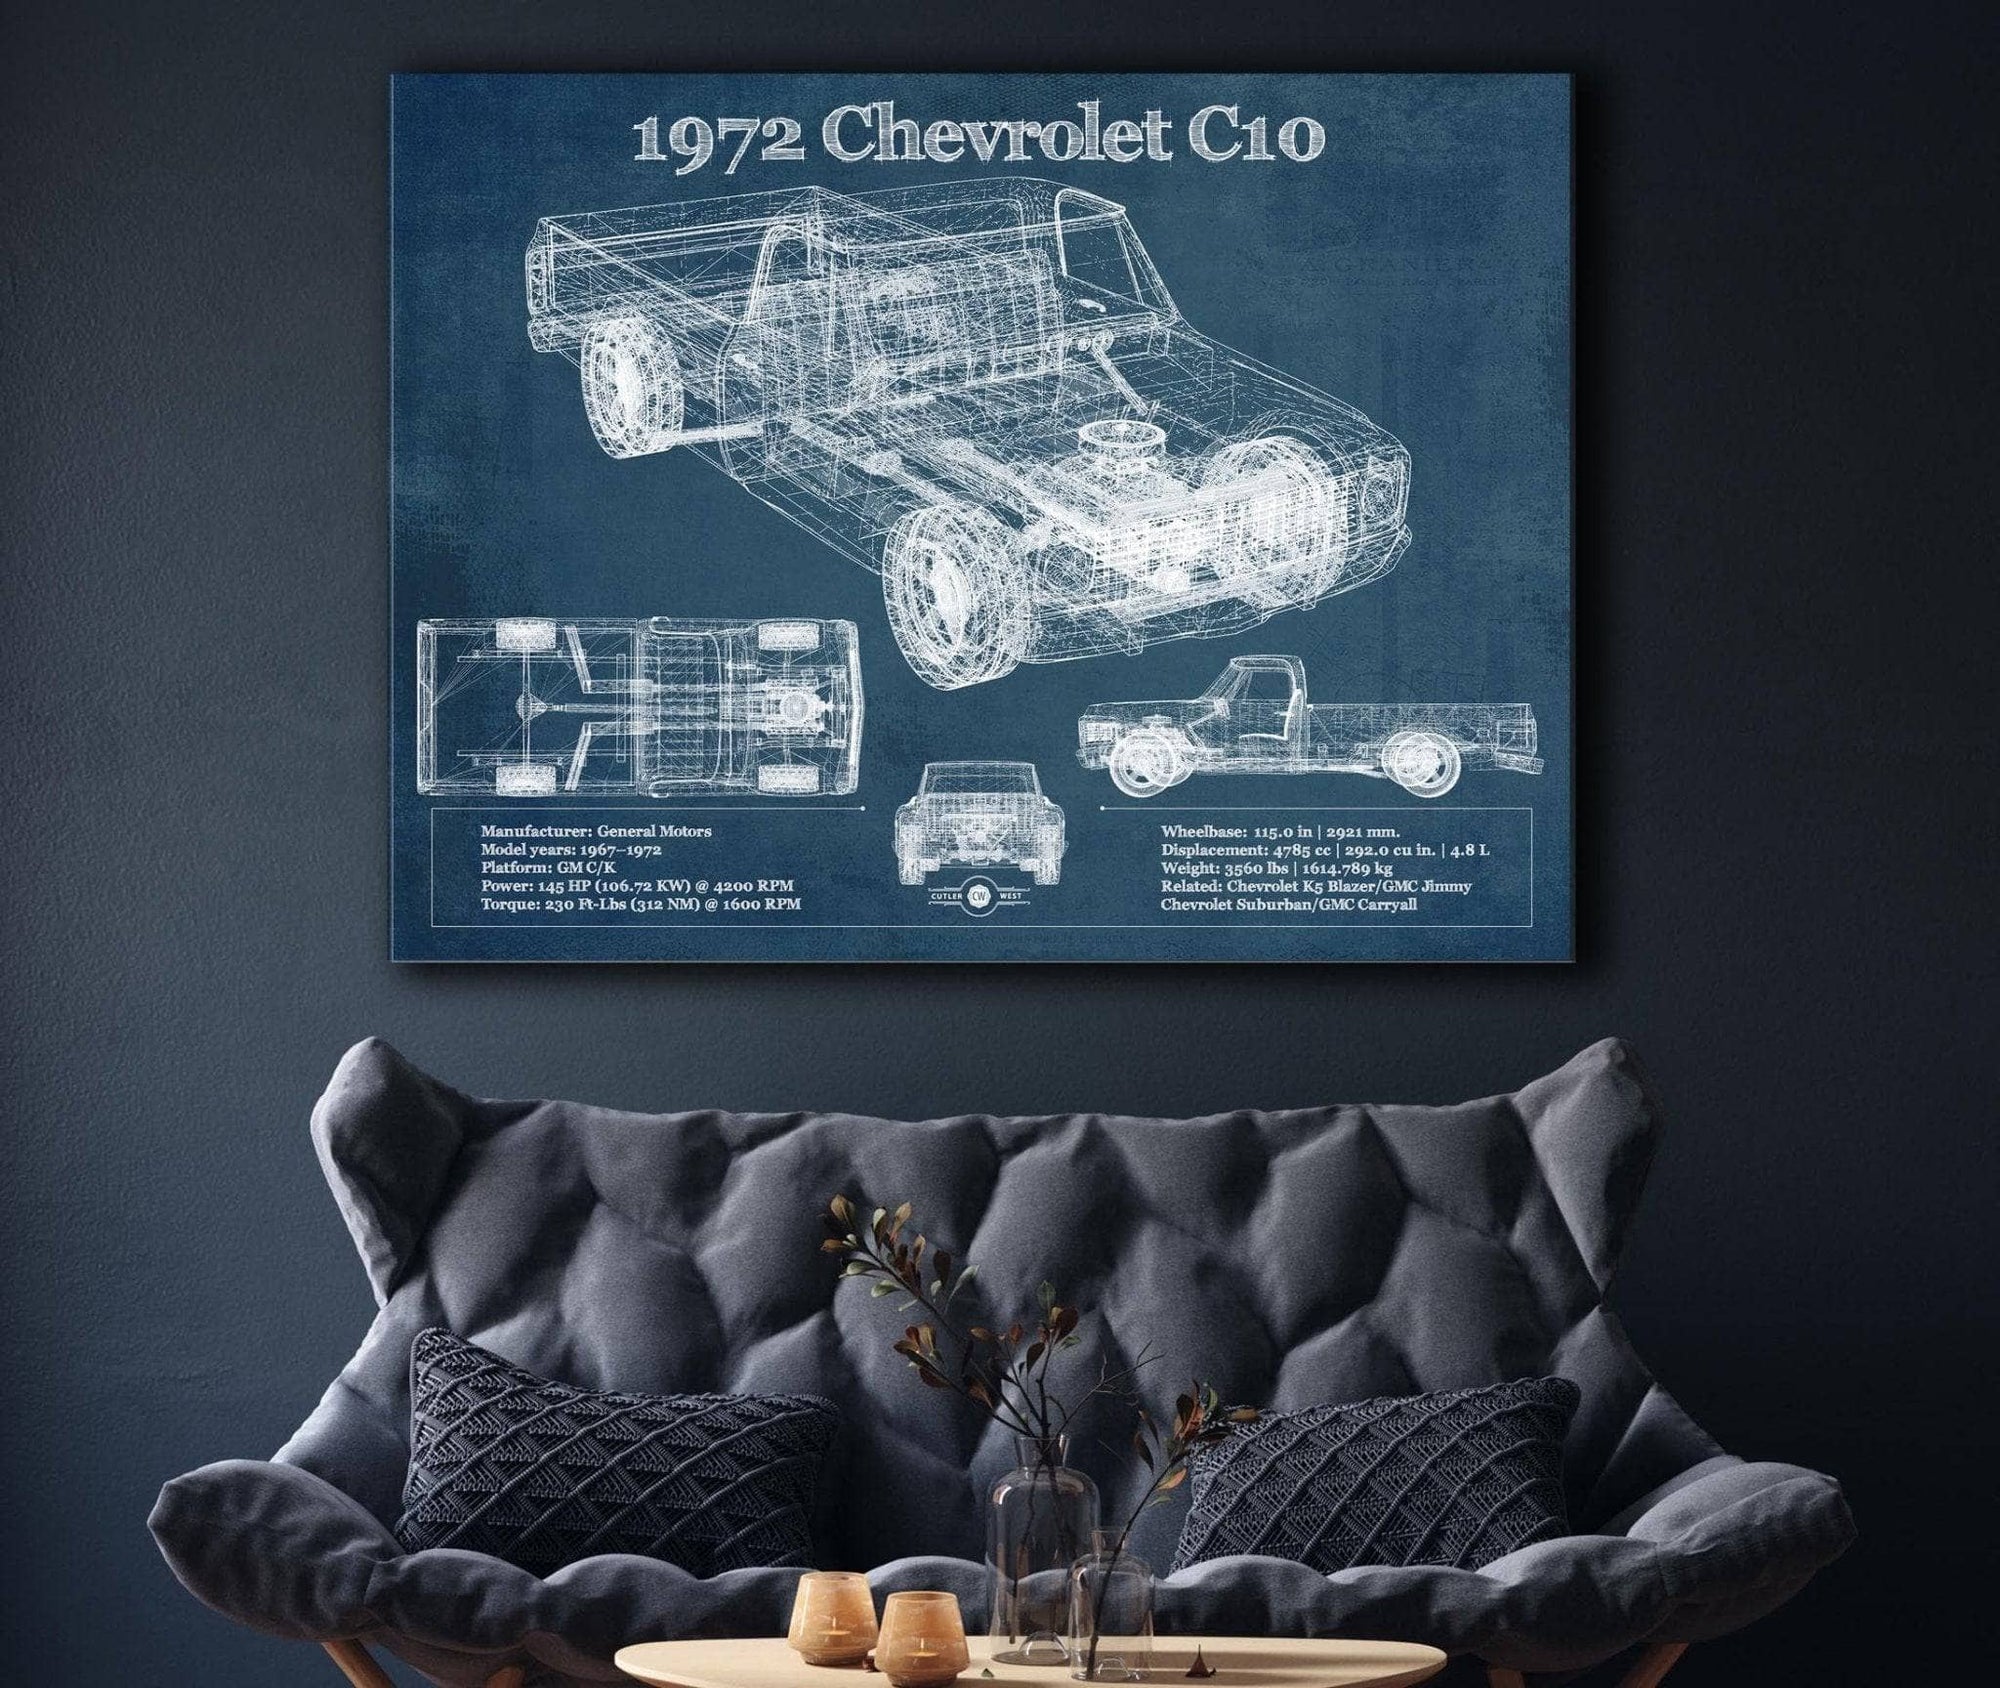 Cutler West Chevrolet Collection 1972 Chevrolet C10 Vintage Blueprint Auto Print